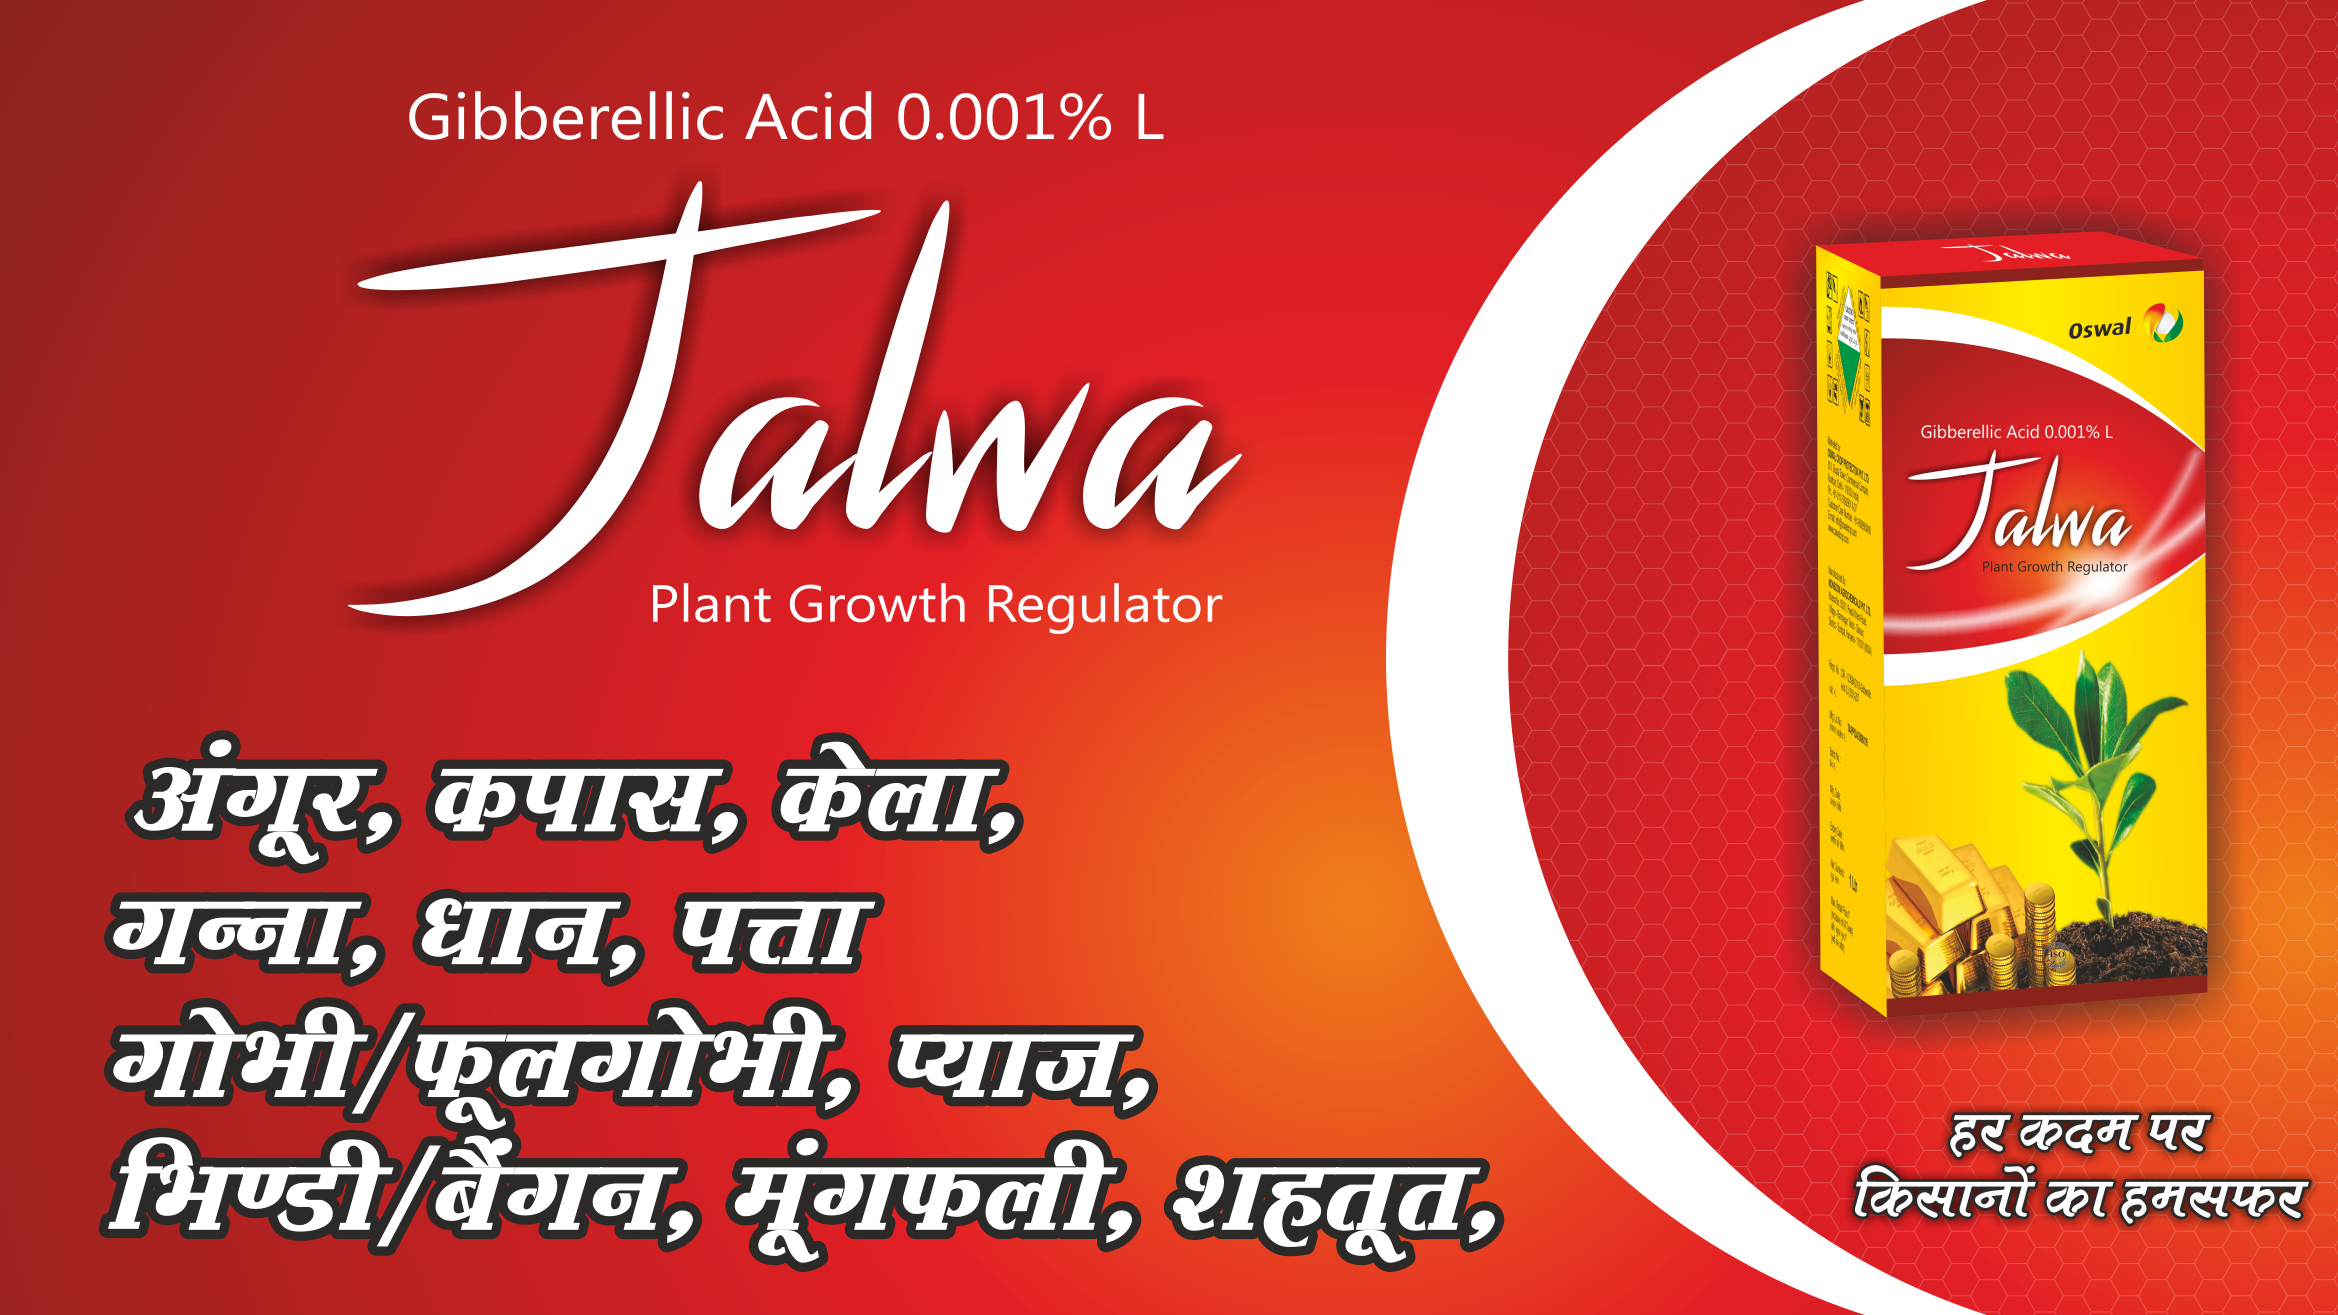 Jalwa-Gibberellic Acid 0.001% L